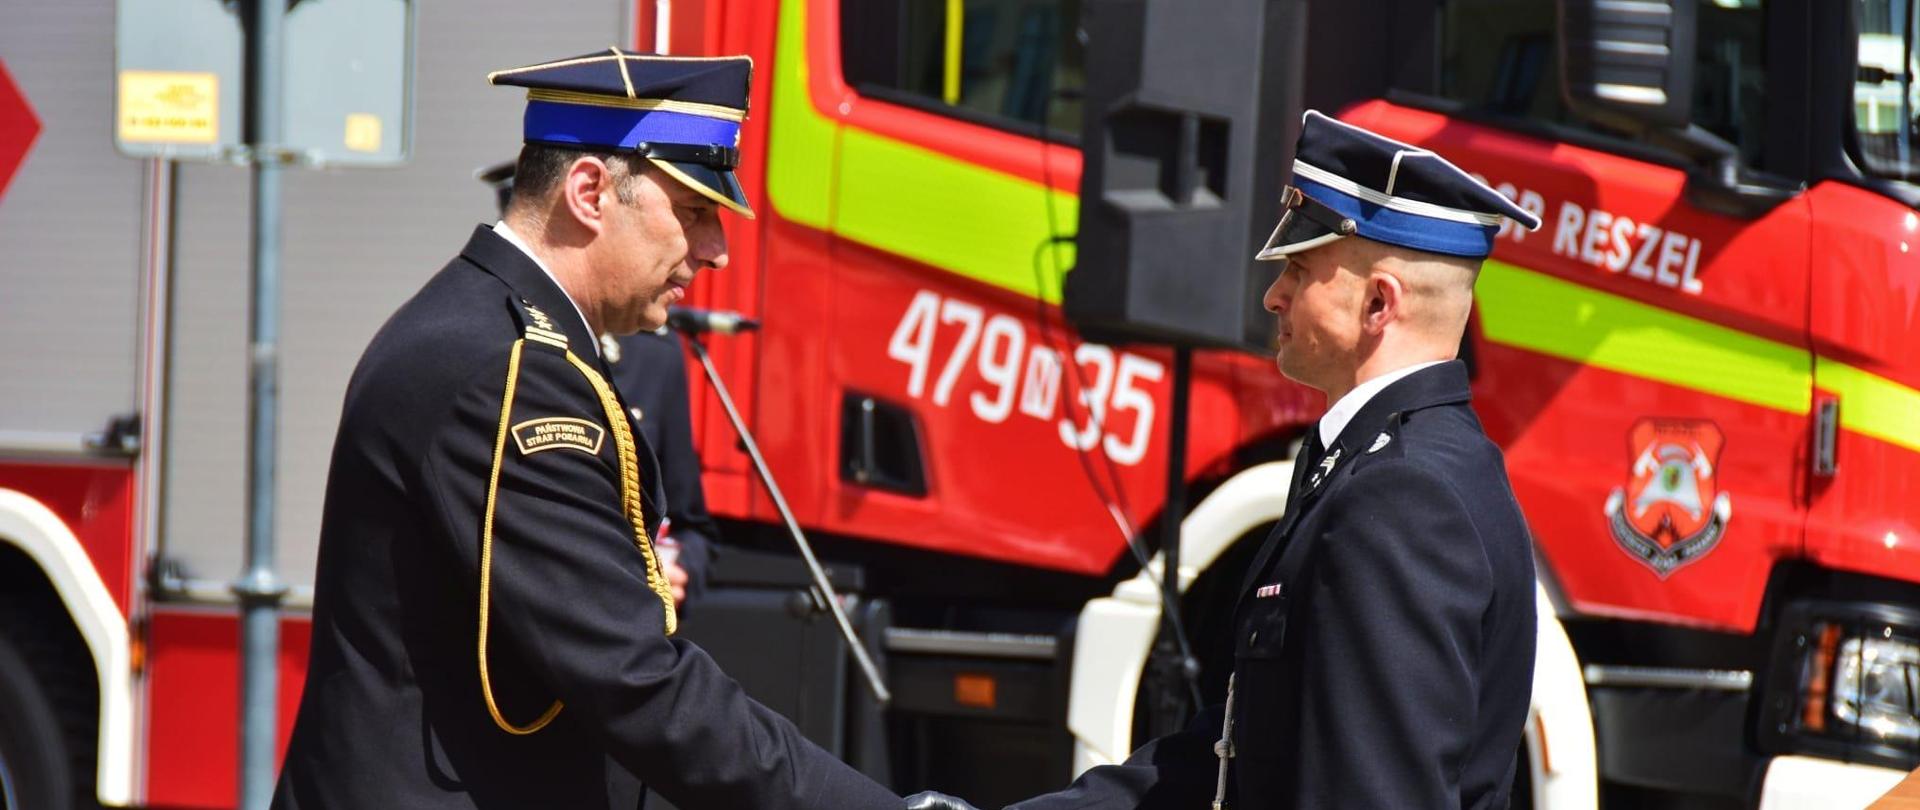 Na zdjęciu widać dwóch strażaków w uścisku dłoni. Funkcjonariusze ubrani w mundury wyjściowe. Za nimi można zauważyć pojazd strażacki.